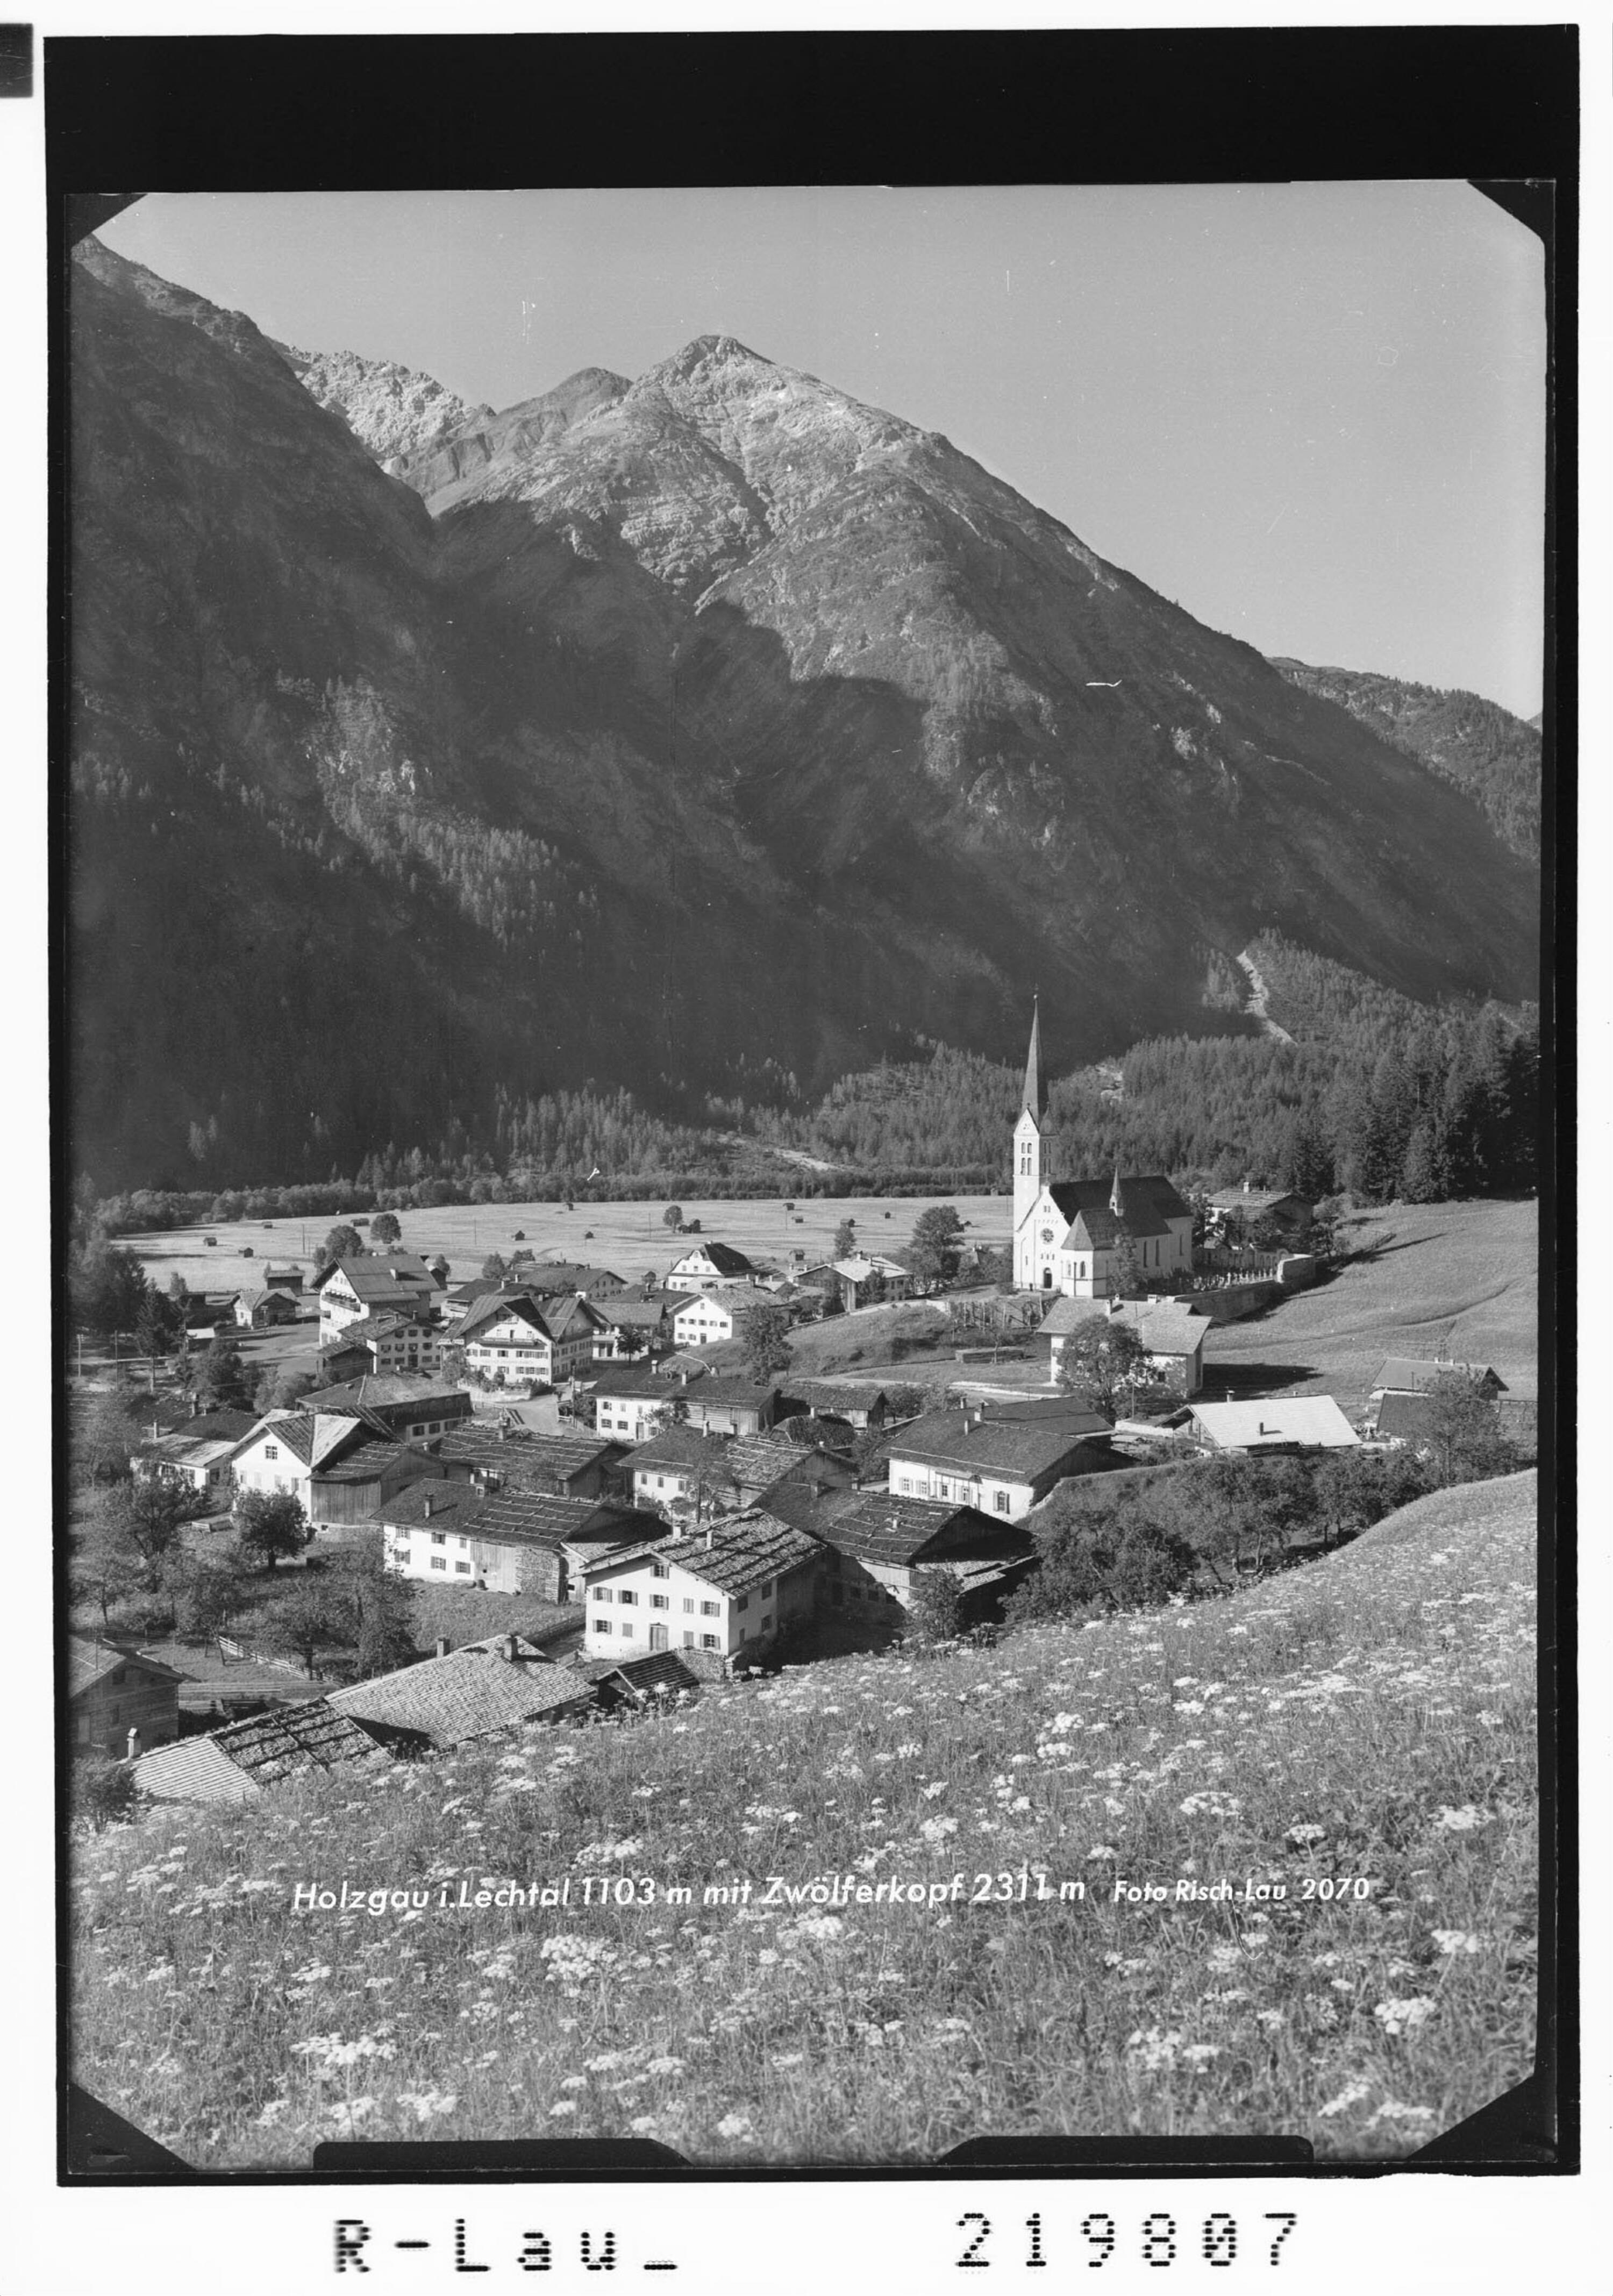 Holzgau im Lechtal 1103 m mit Zwölferkopf 2311 m></div>


    <hr>
    <div class=